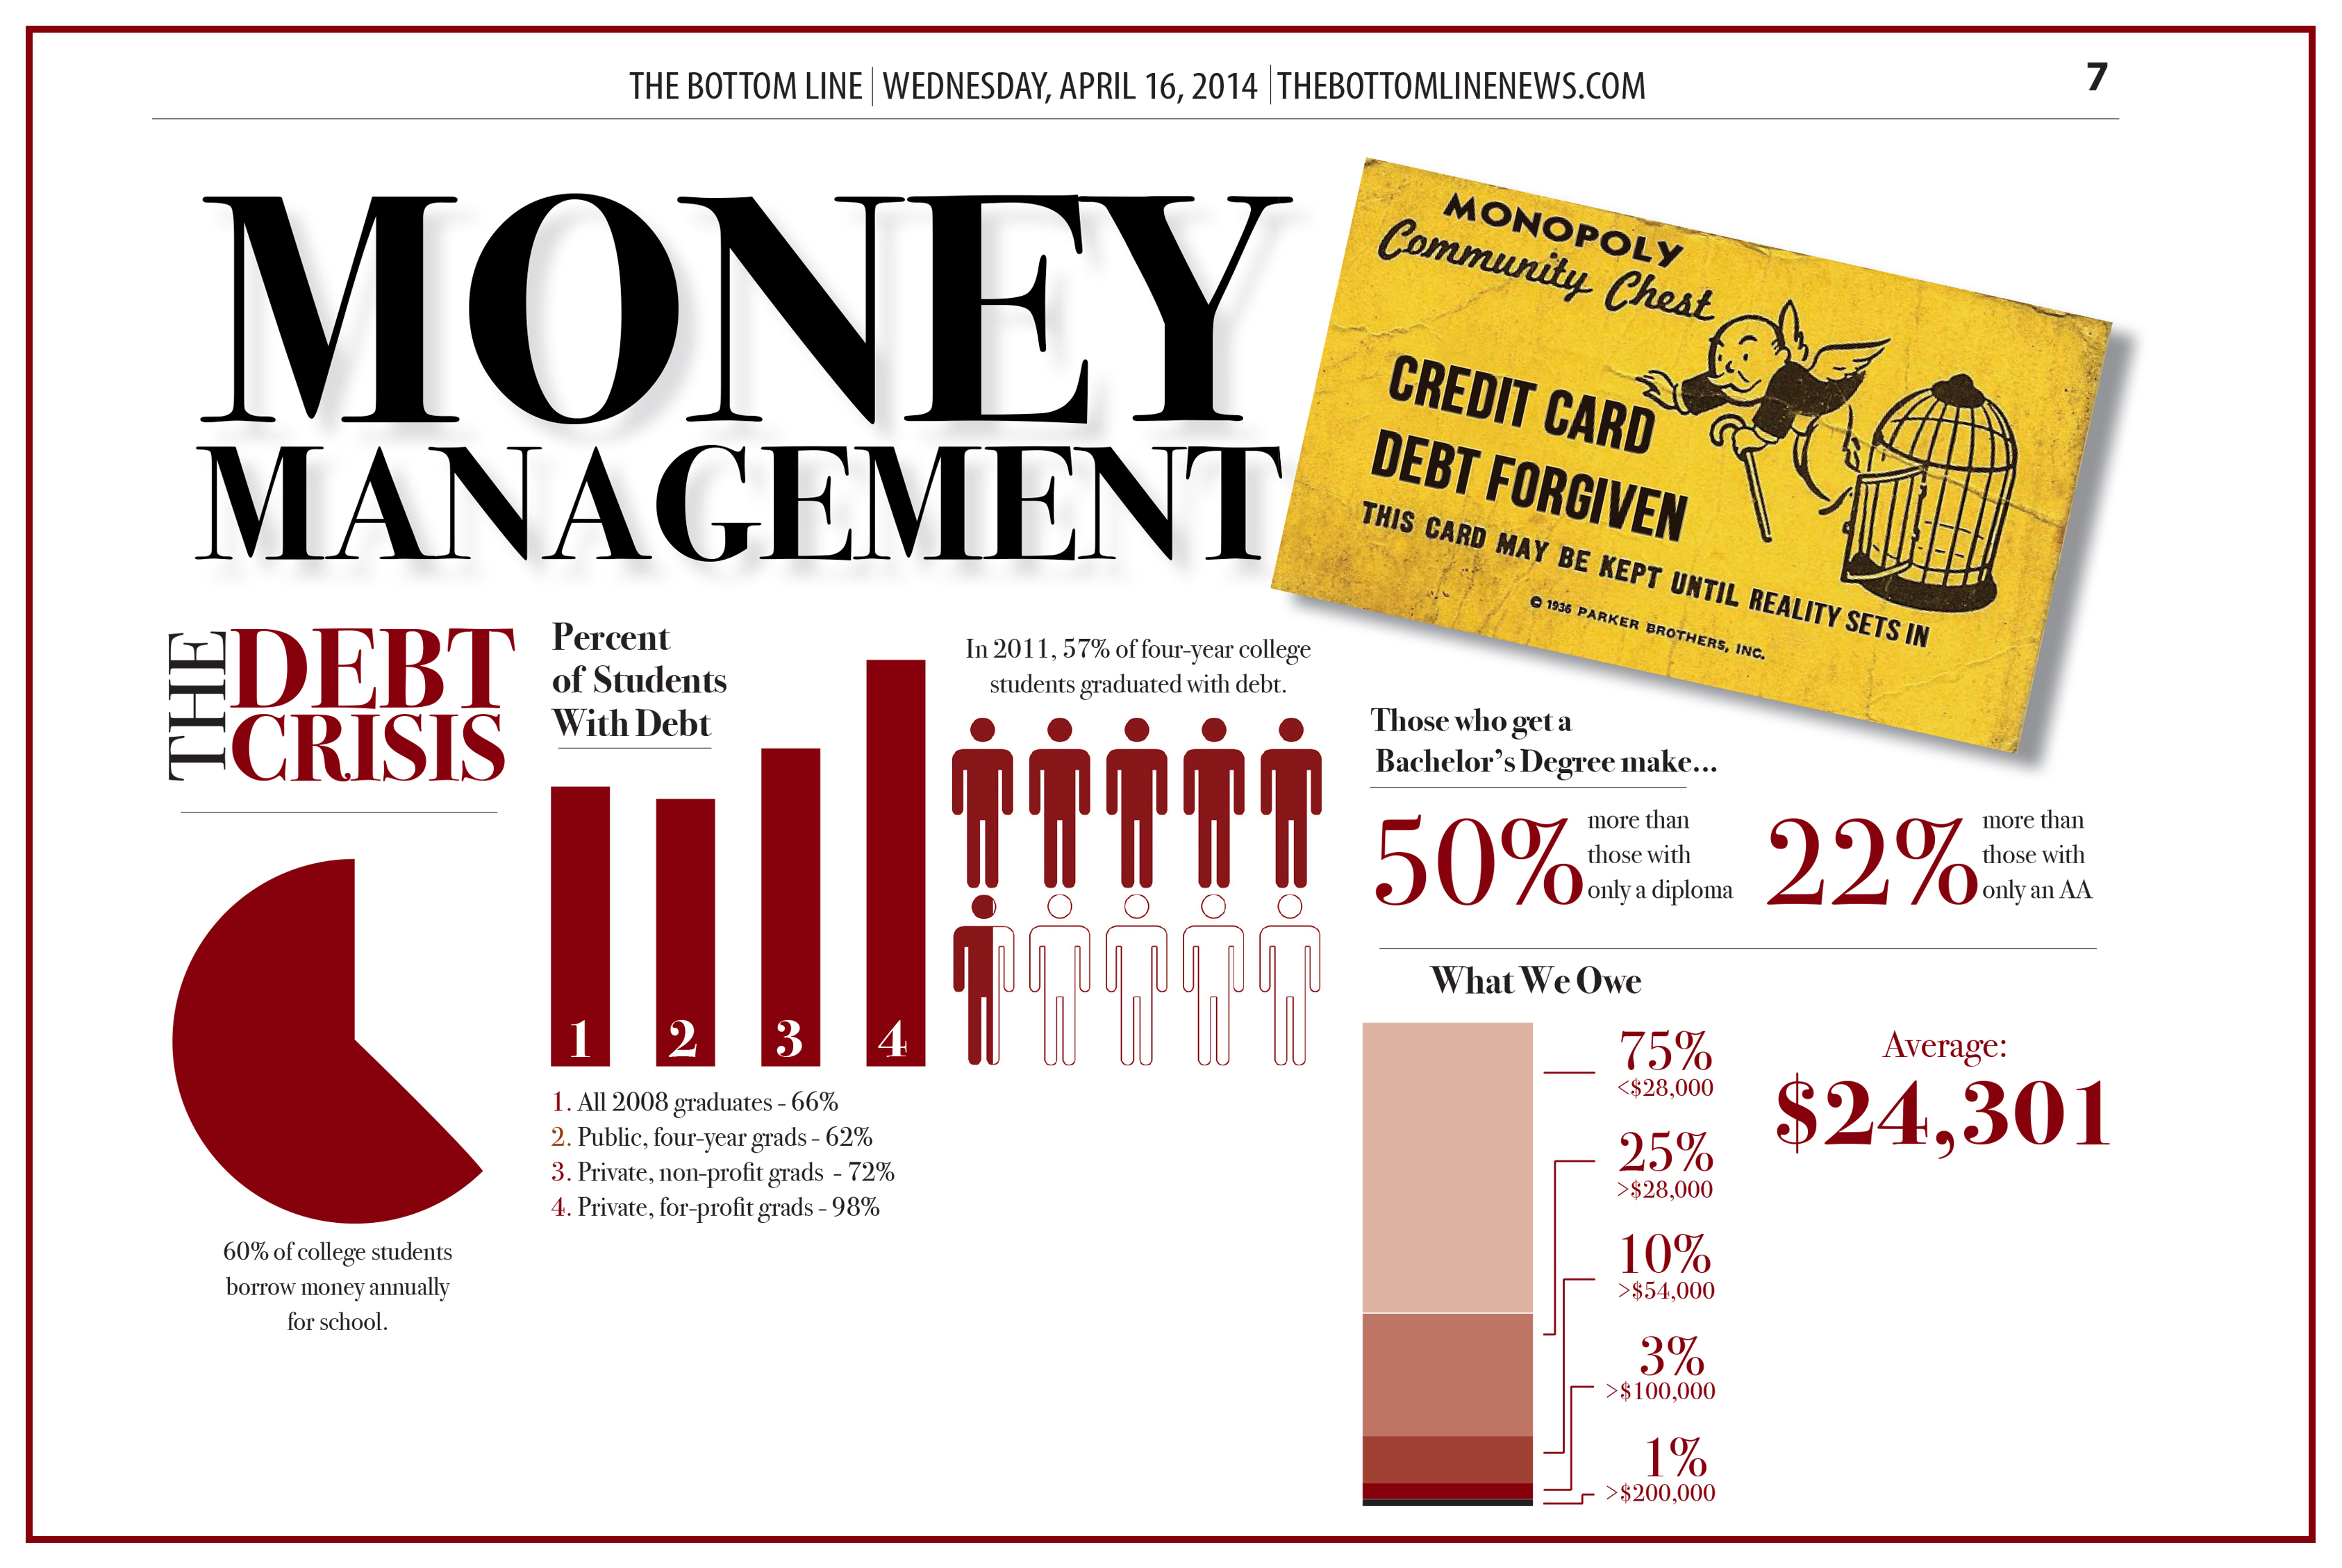 Moneymanagement